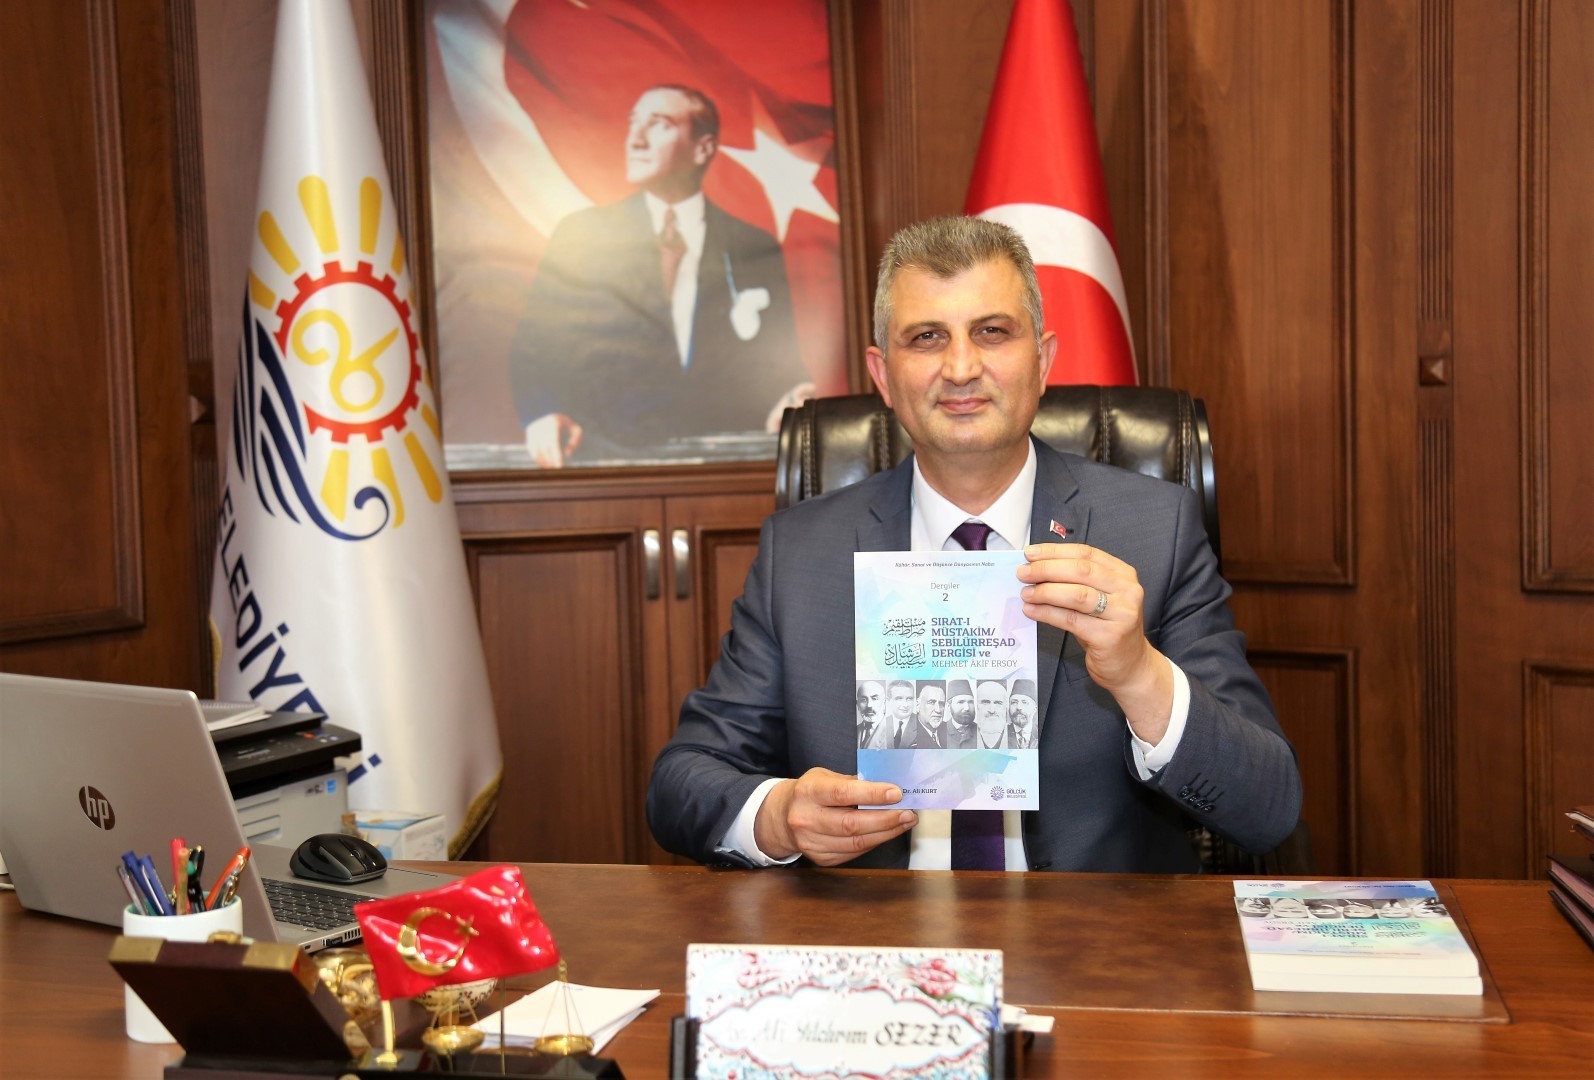 Gölcük Belediyesi, Mehmet Akif Ersoy kitabı yayınladı - Kocaeli Haberleri